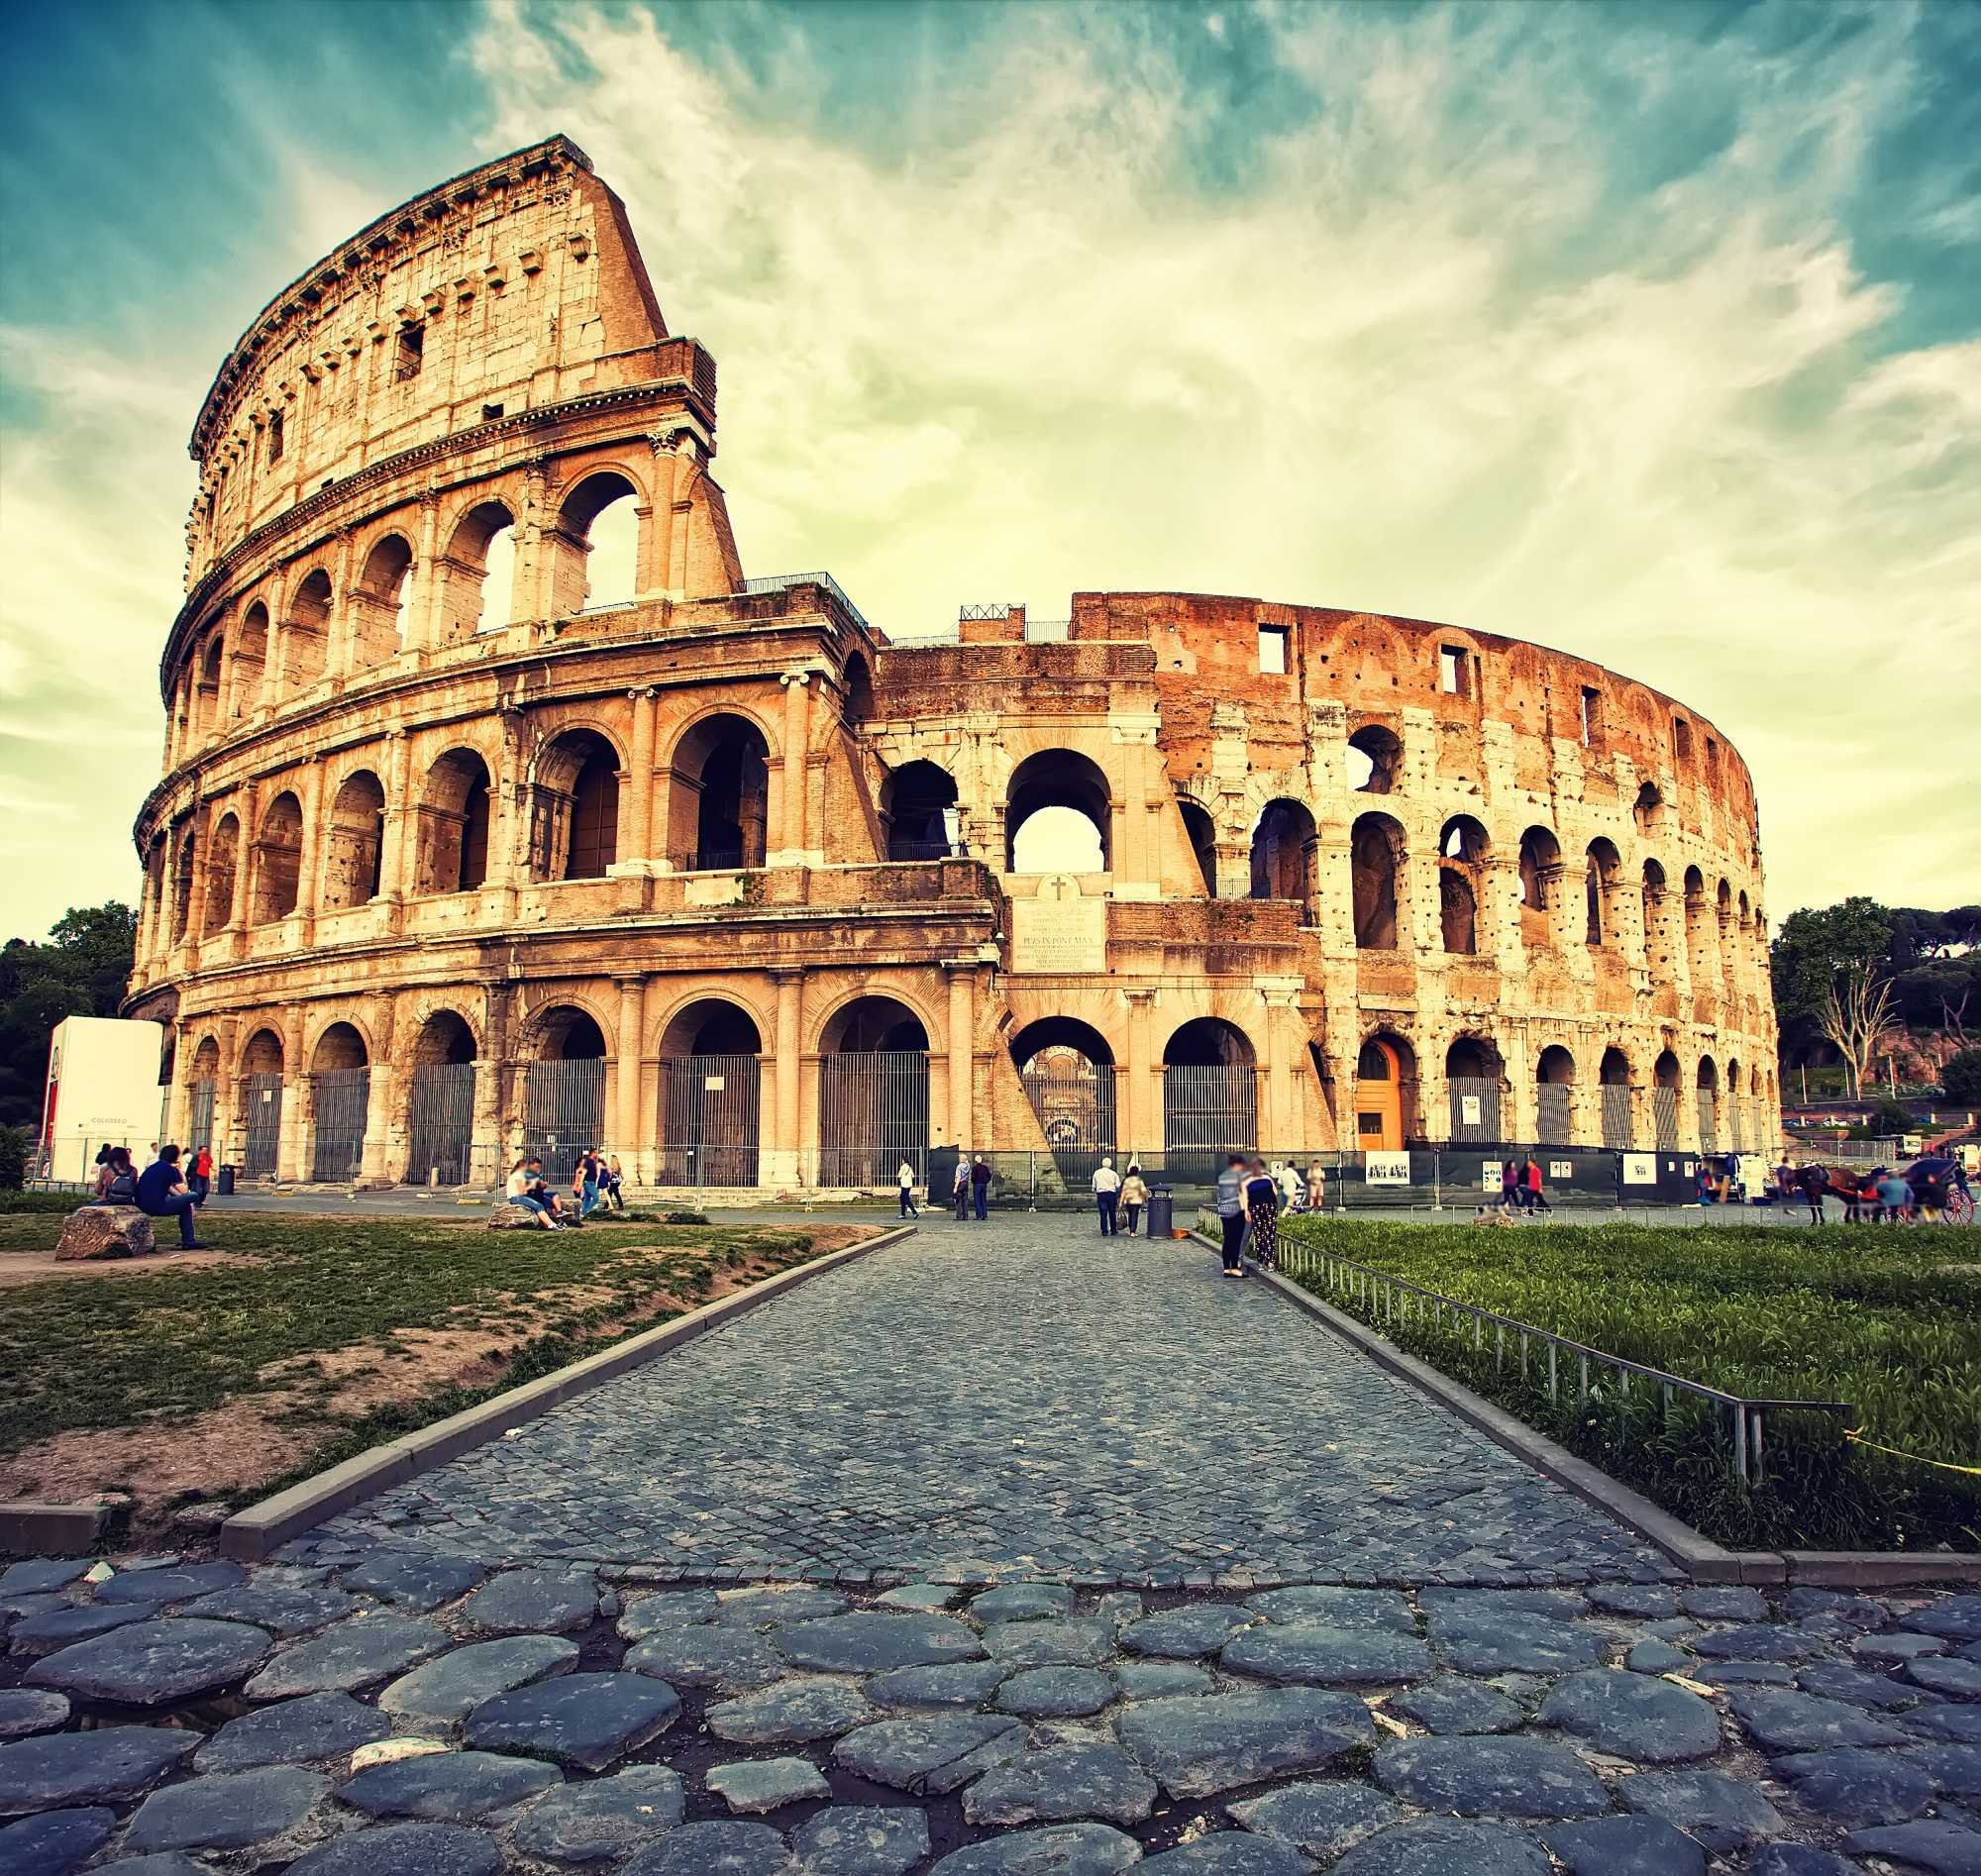 Colosseum Photos